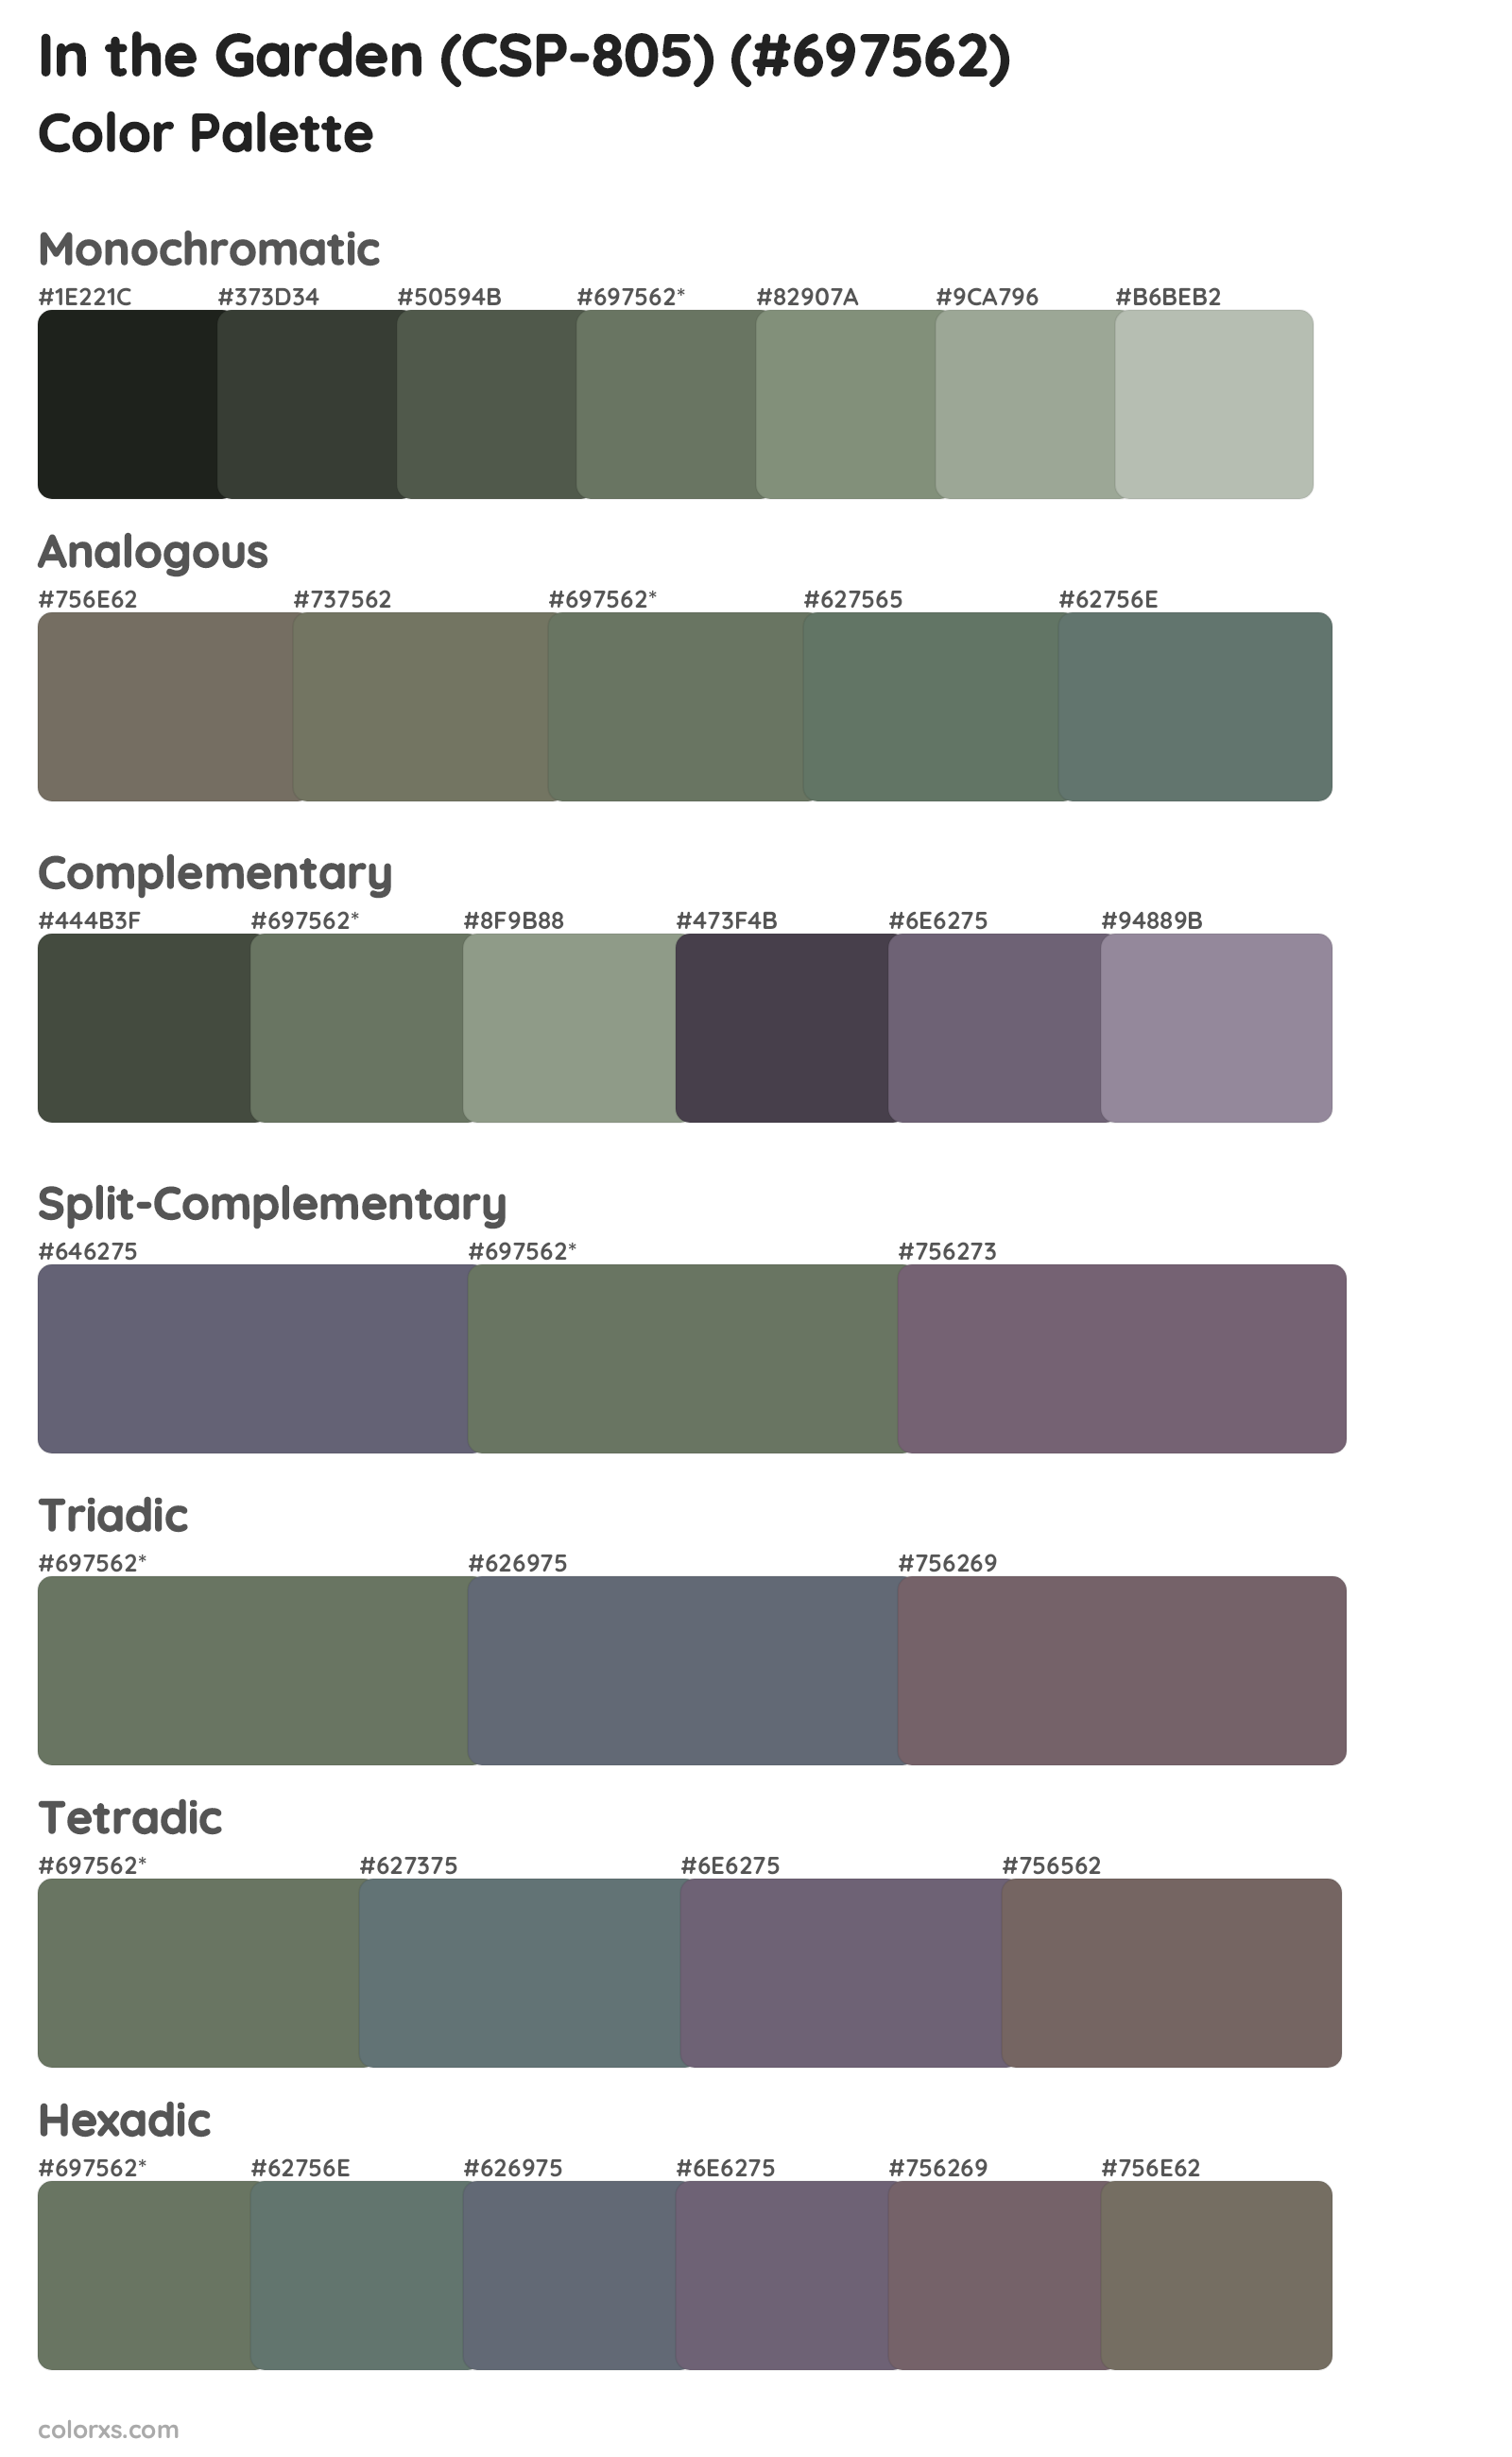 In the Garden (CSP-805) Color Scheme Palettes